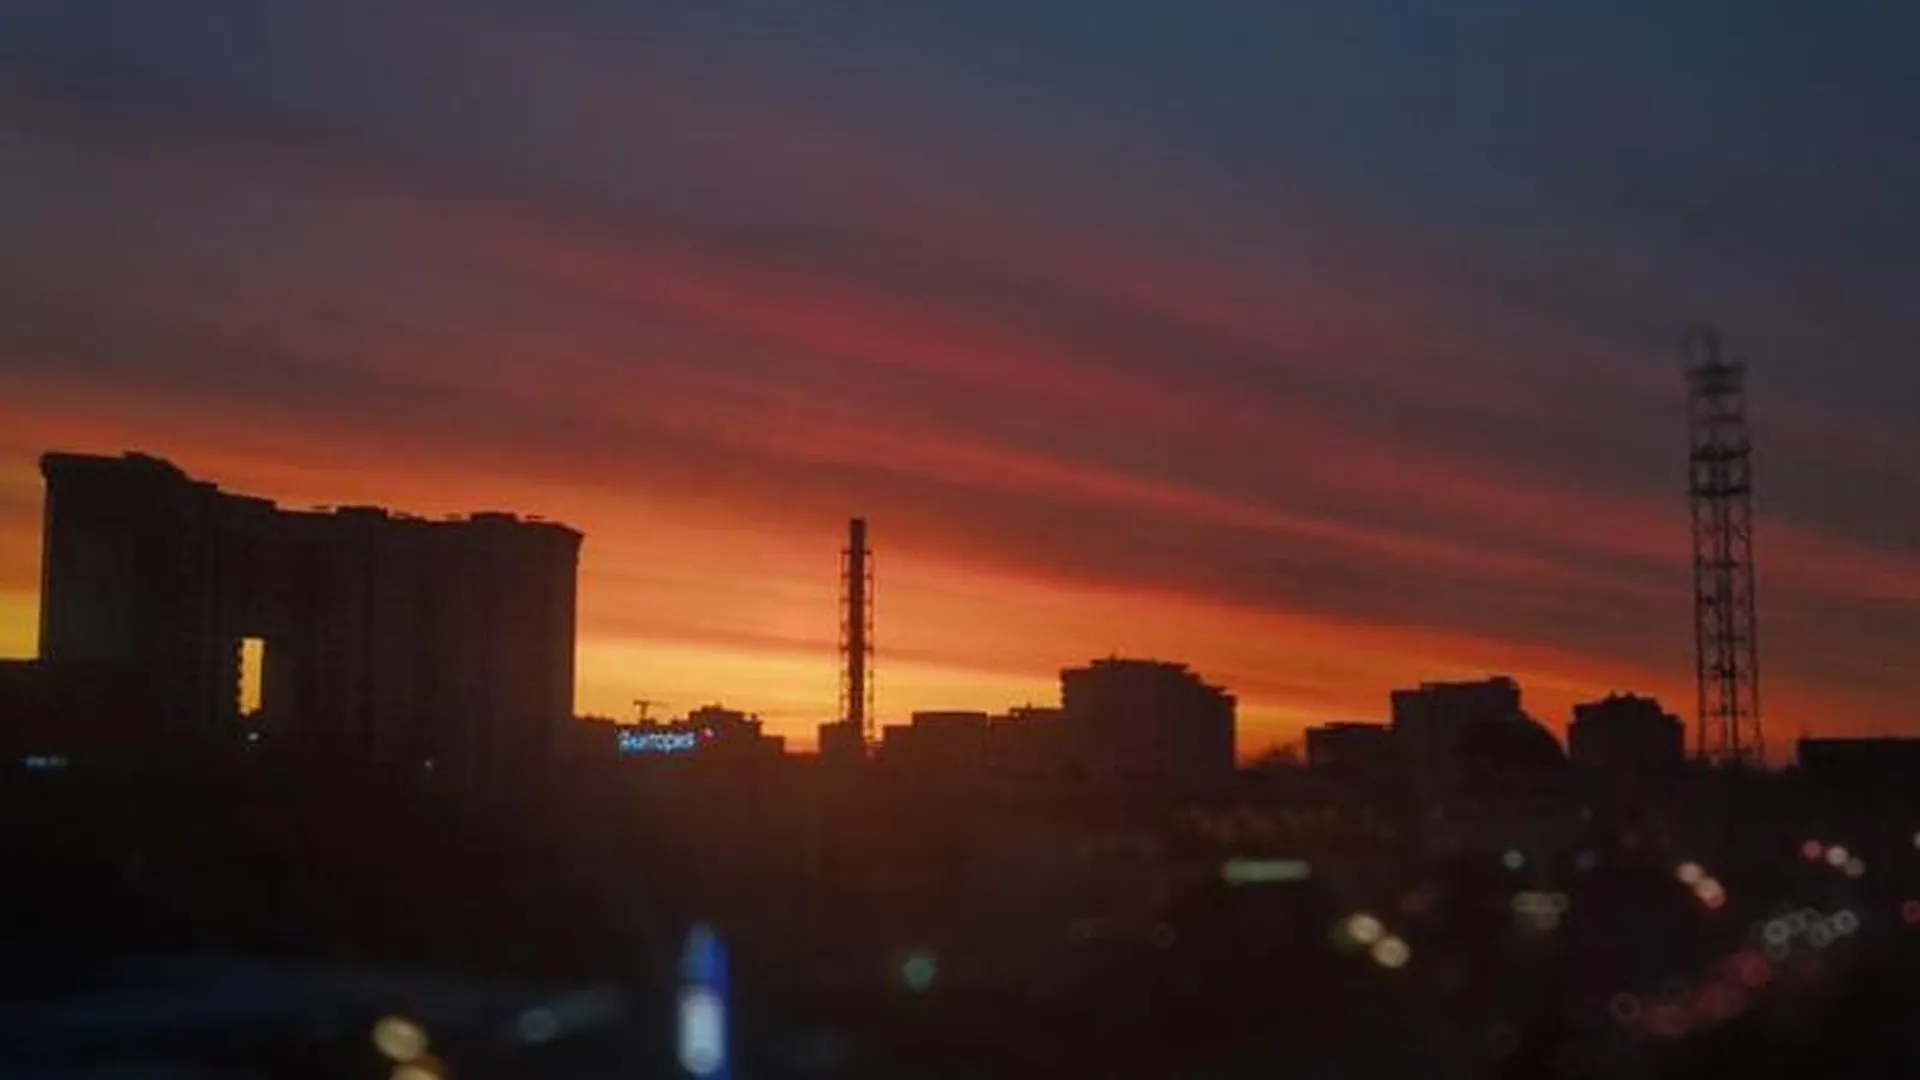 Редкий багряный закат запечатлели на фото жители Подмосковья